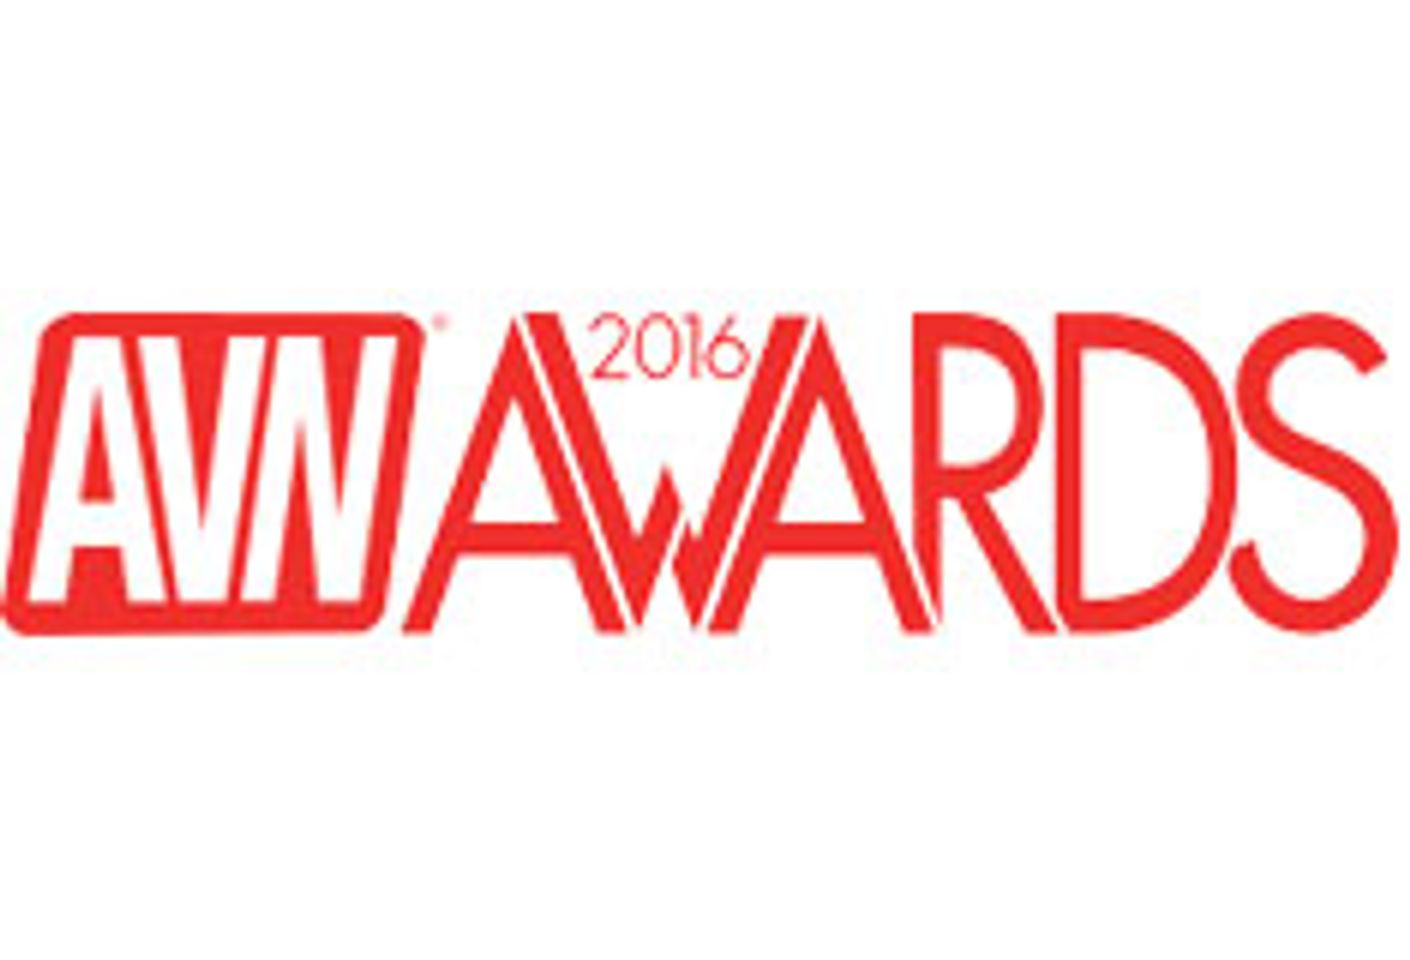 Ryan Driller Nommed In Multiple AVN Awards Categories